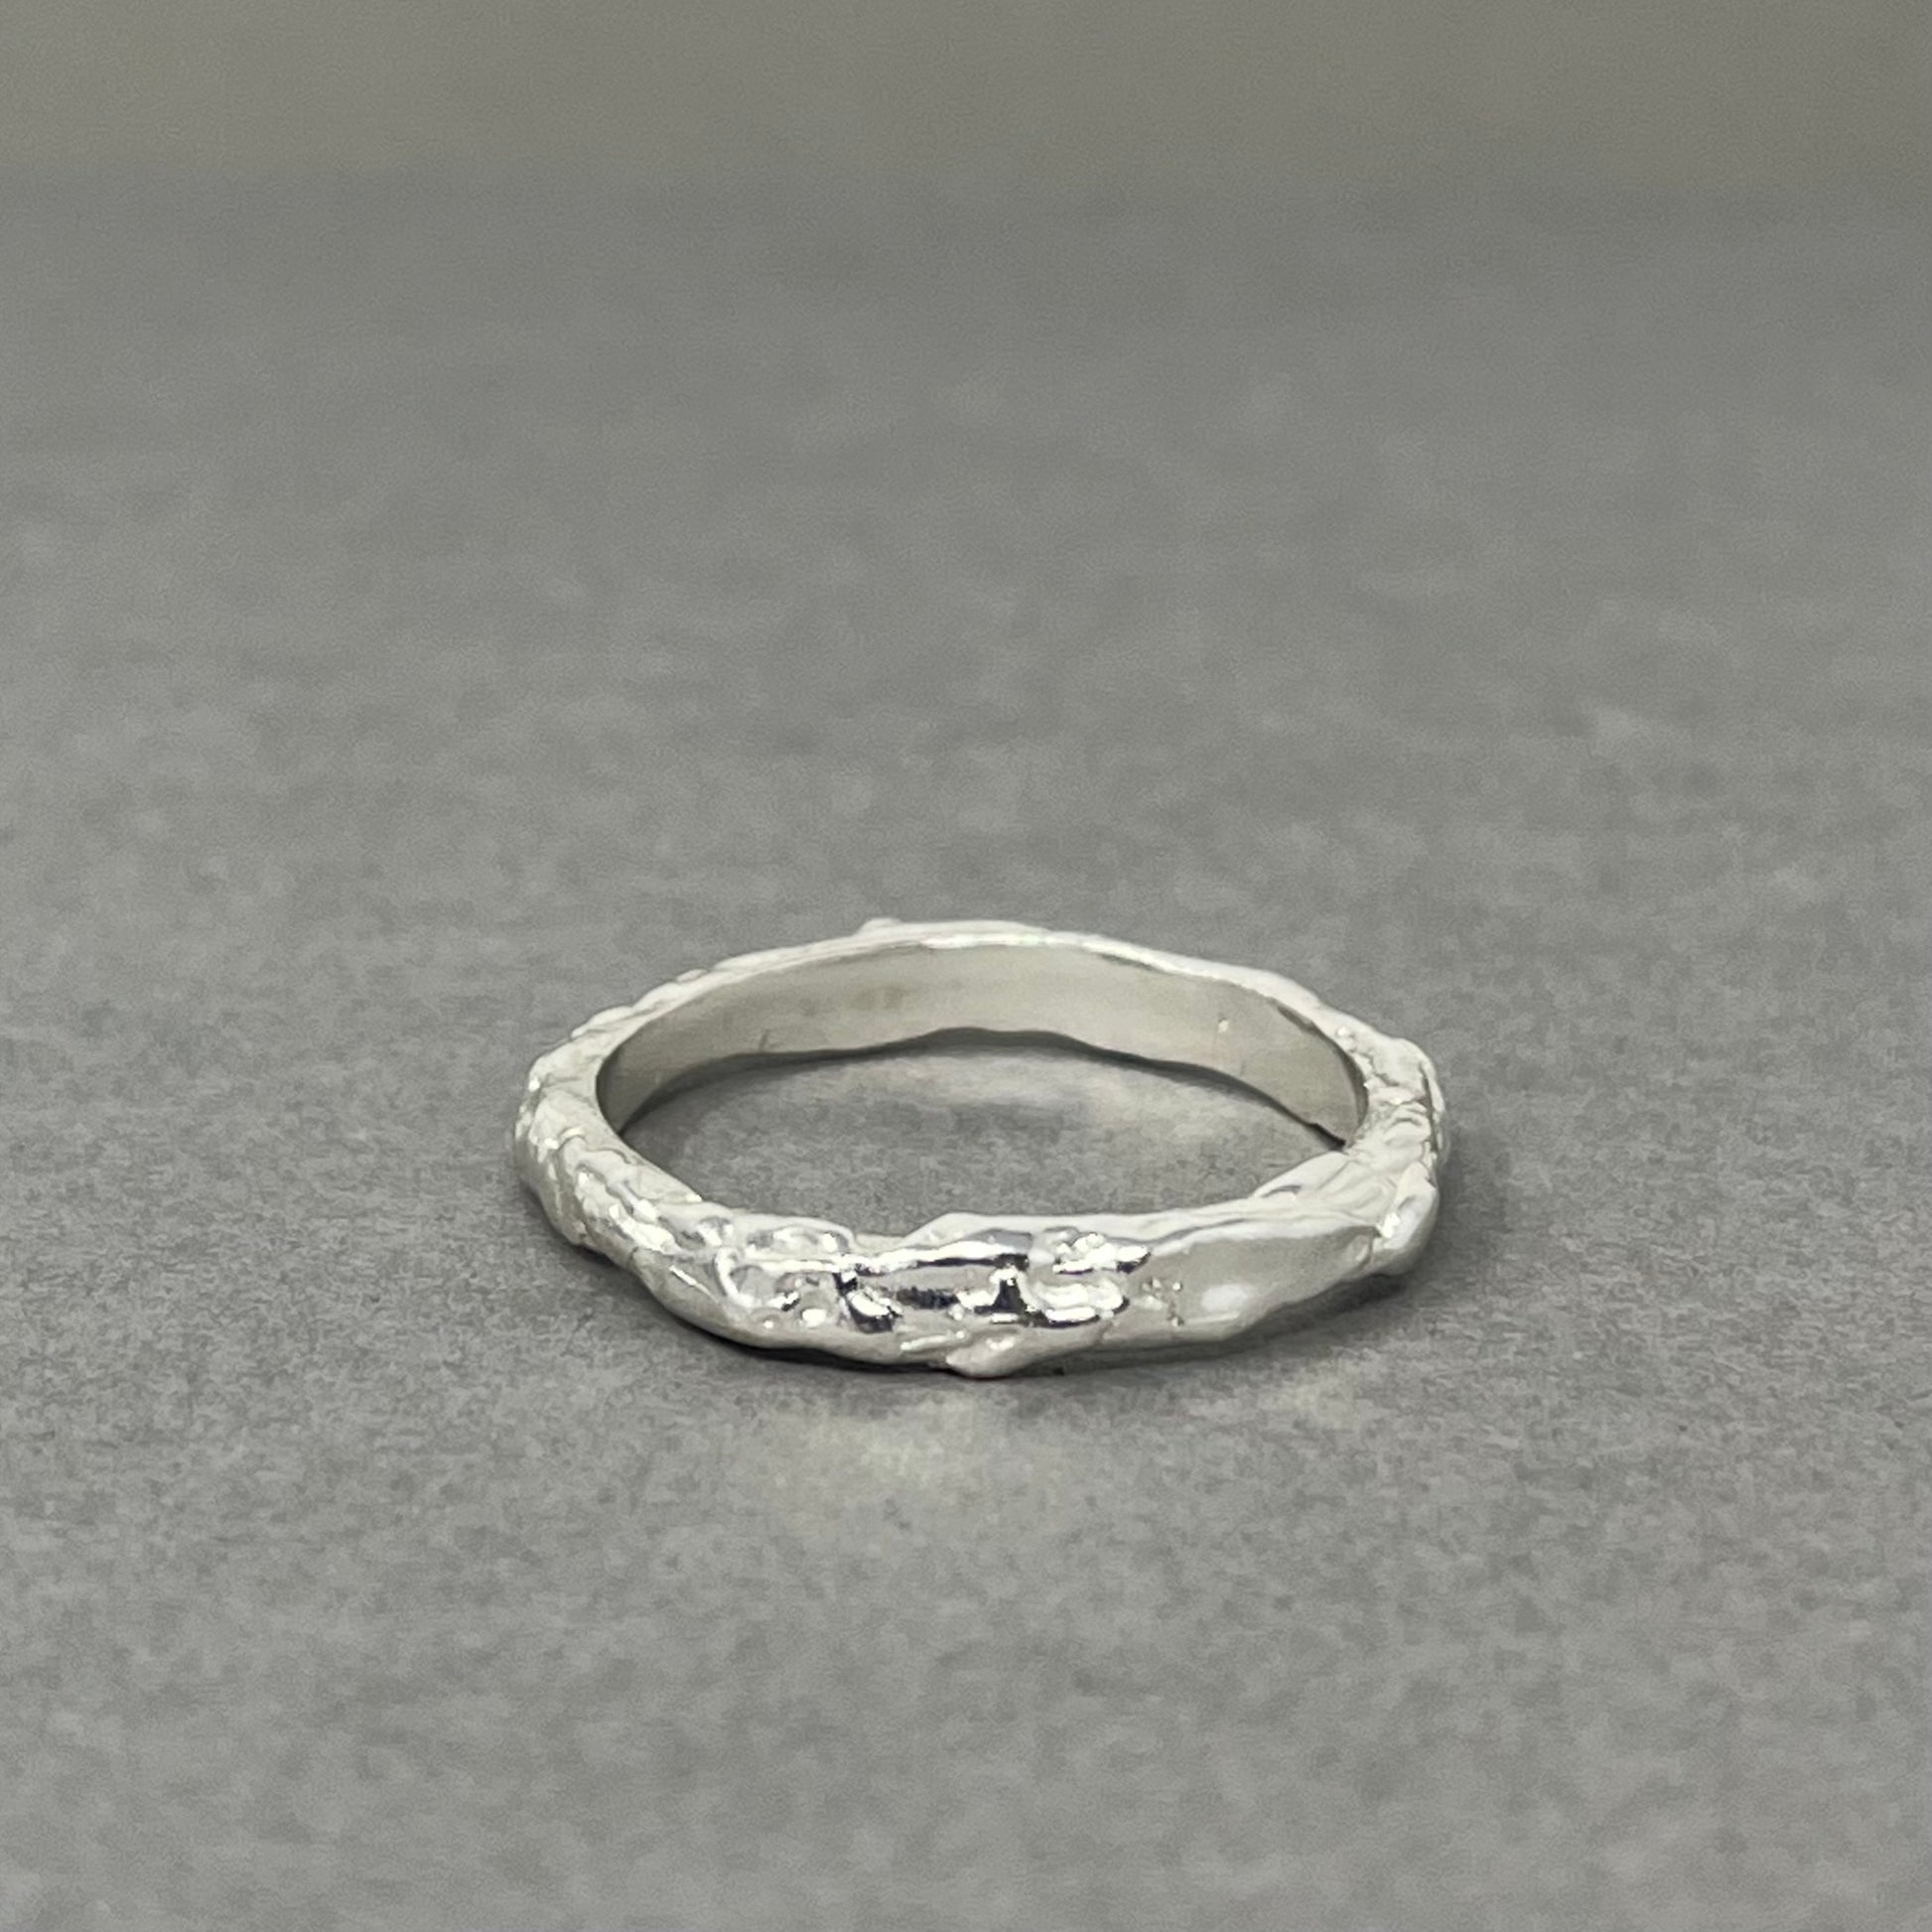 Silver molten wedding ring